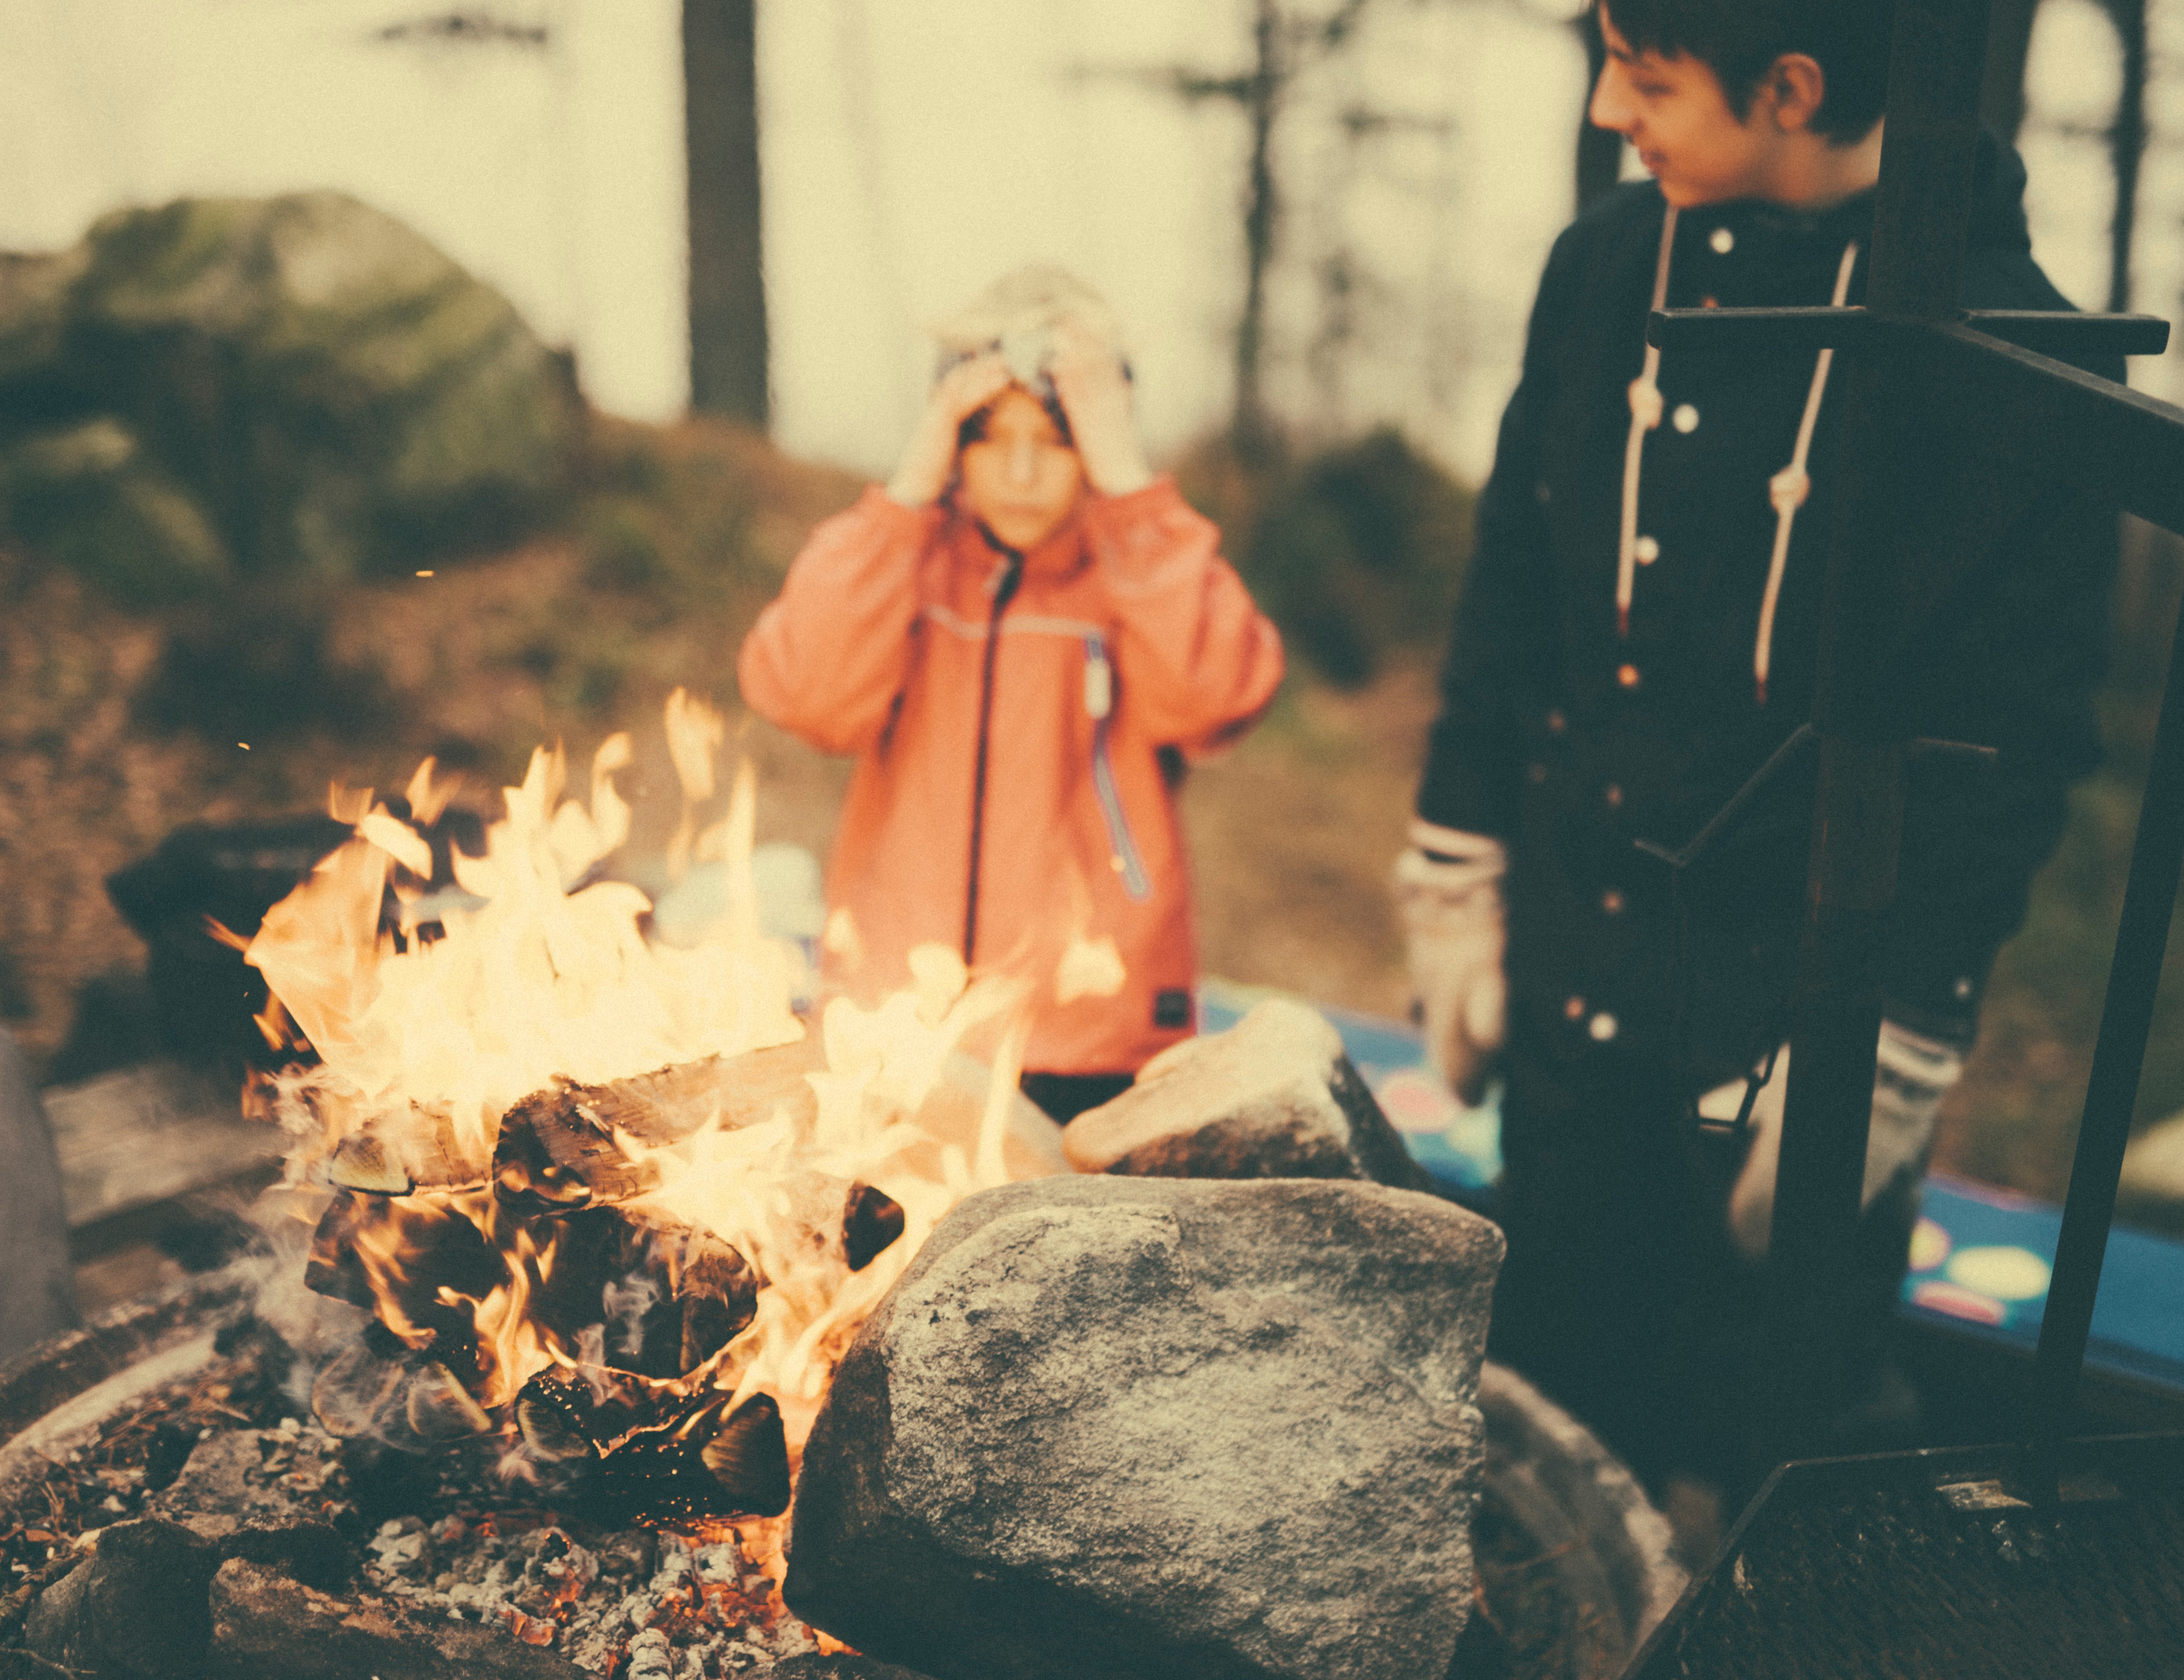 Two boys near a bonfire | Source: Unsplash